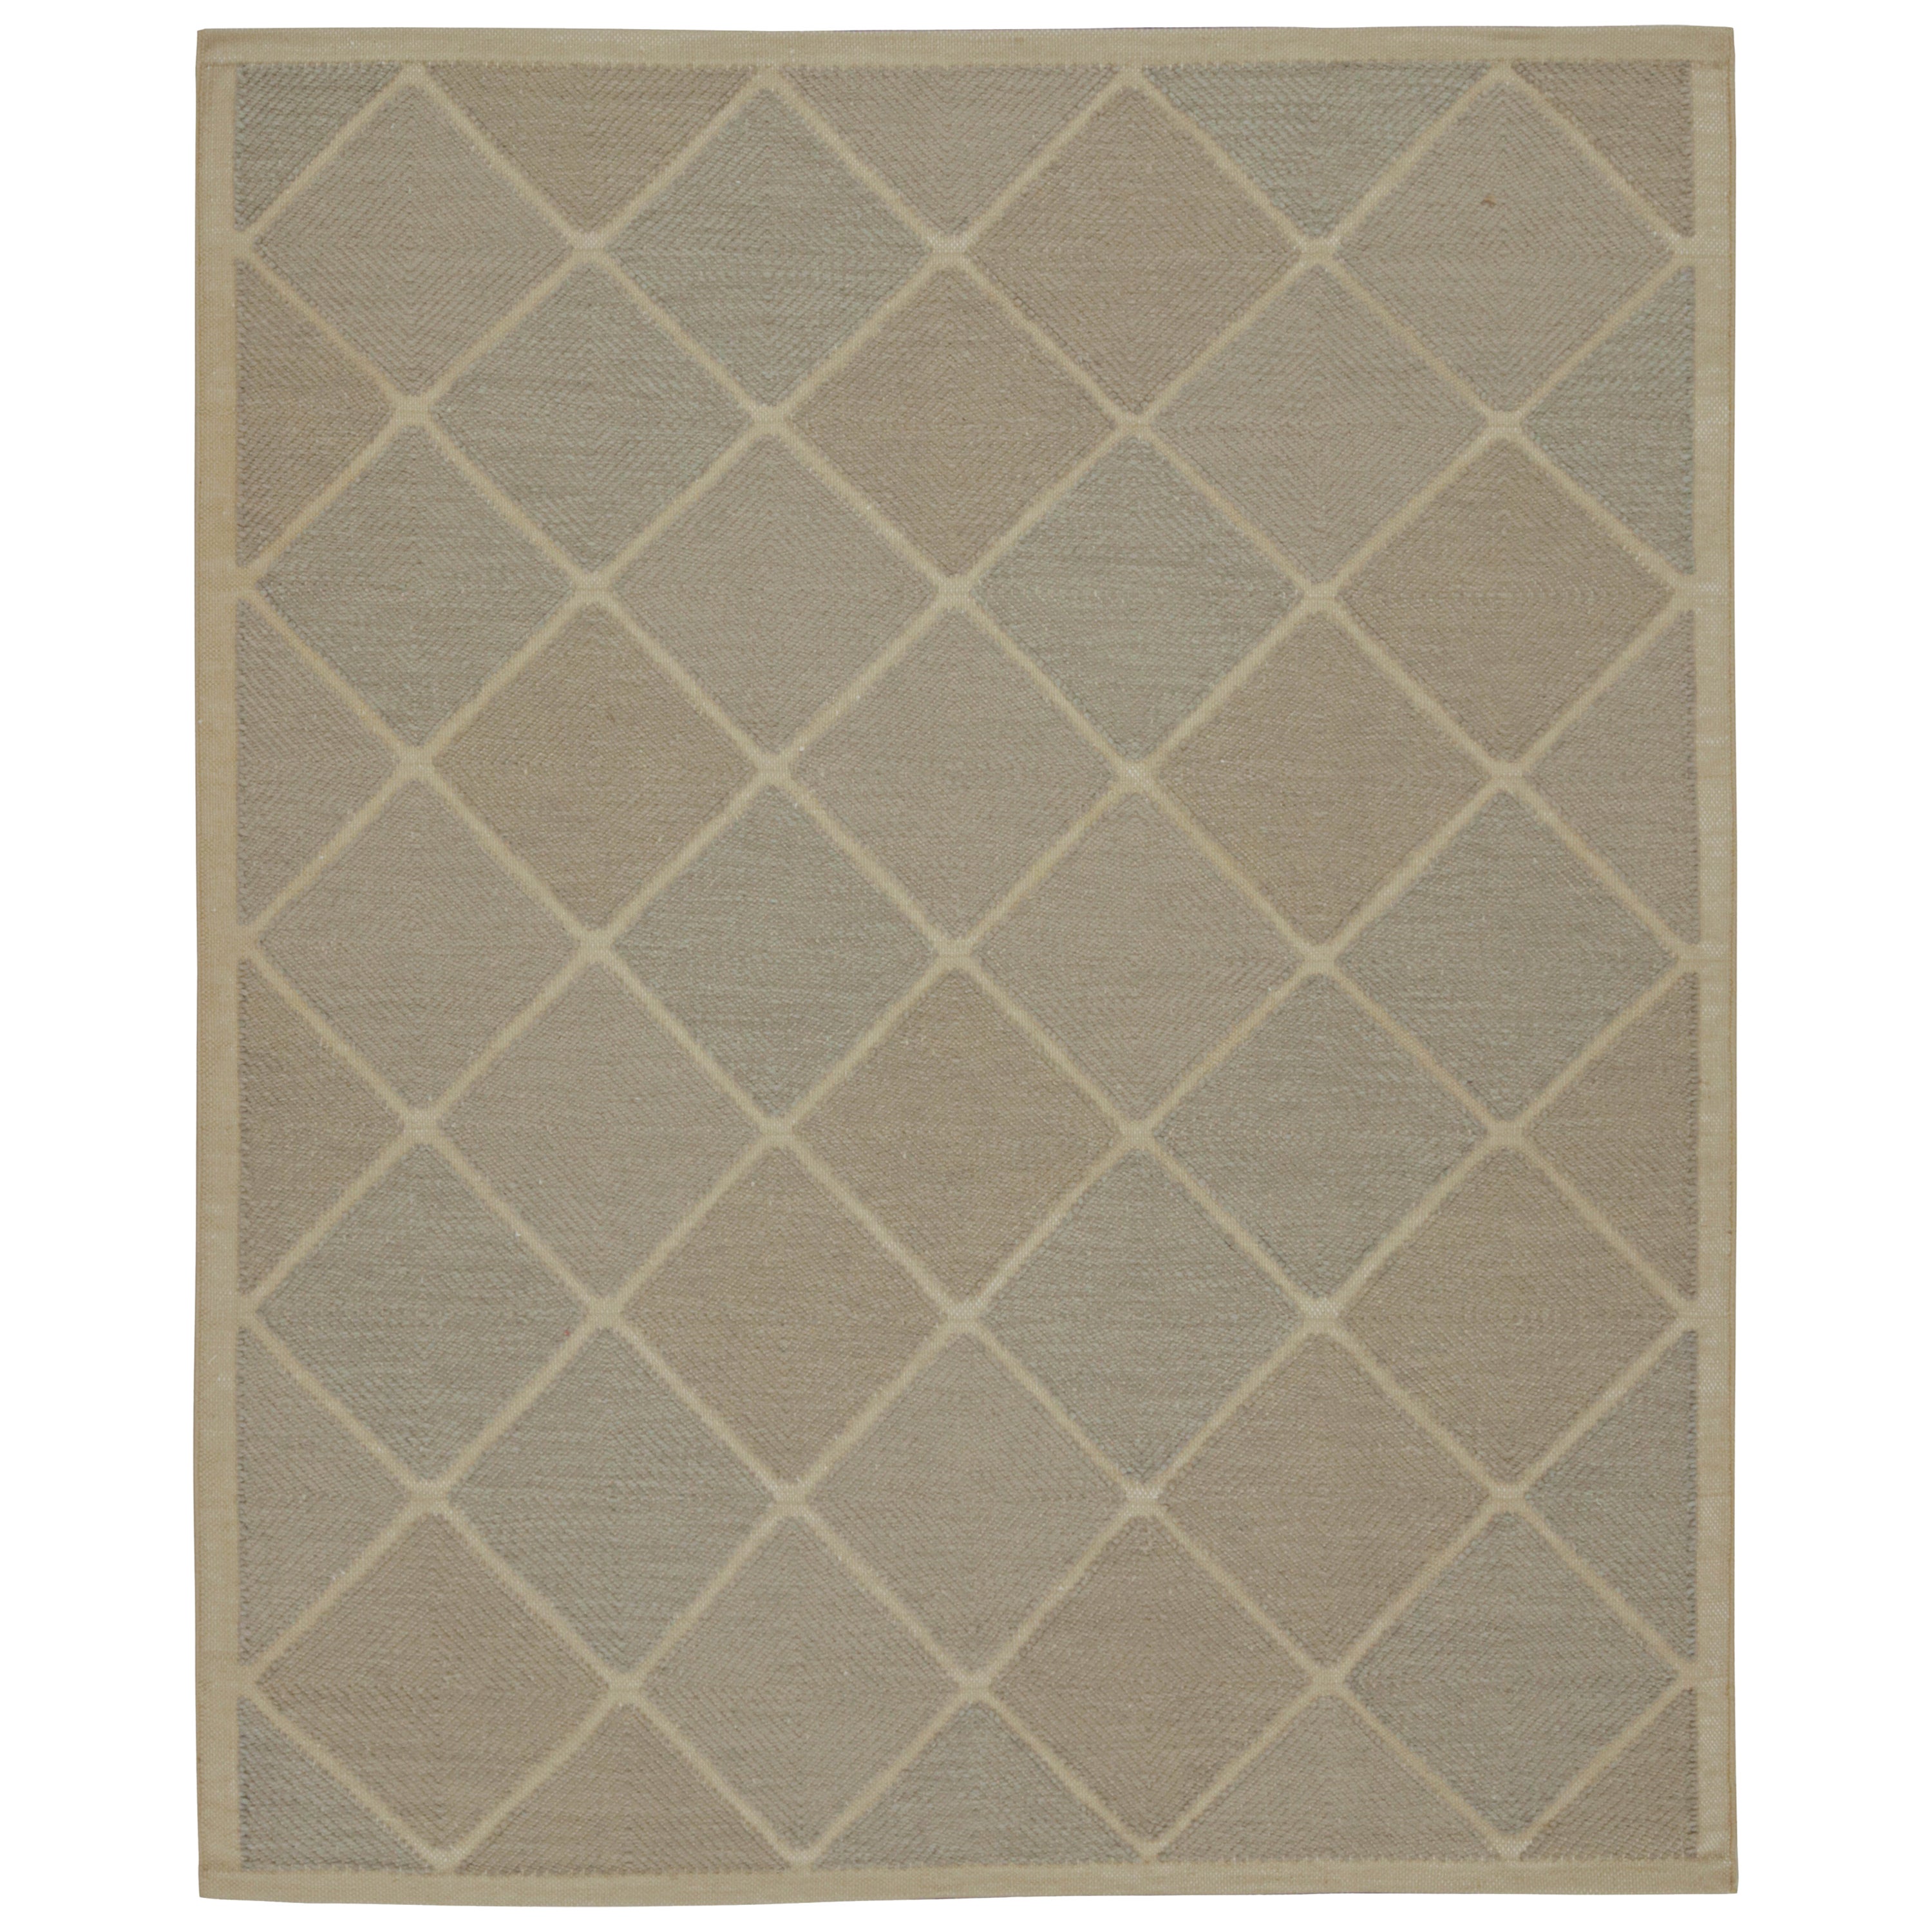 Rug & Kilim's Scandinavian Style Custom Kilim in Brown & Gray Geometric Pattern (Kilim personnalisé de style scandinave à motifs géométriques)